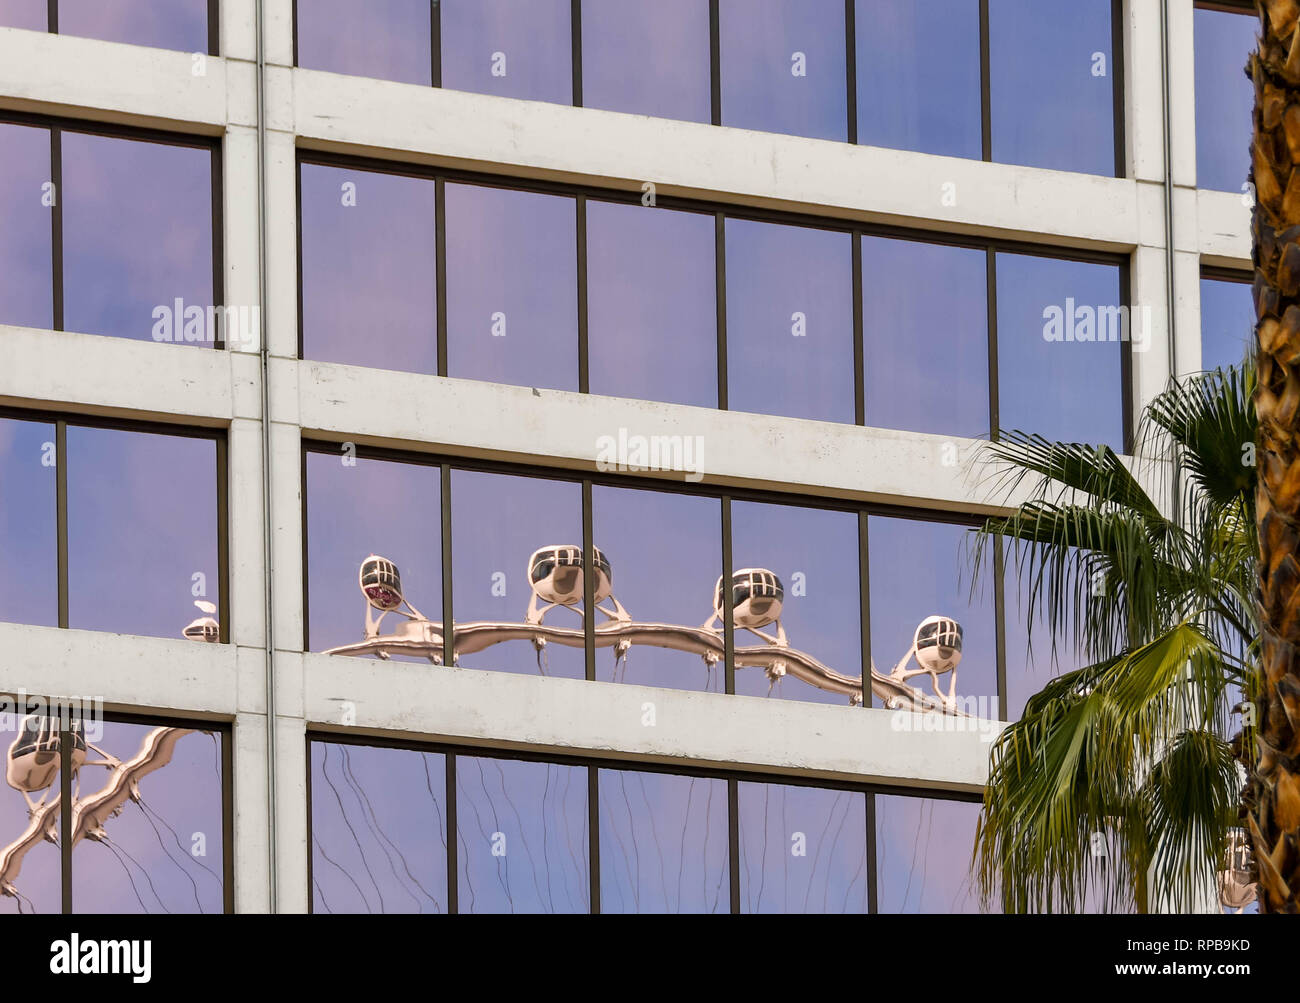 LAS VEGAS, NEVADA - Febbraio 2019: la riflessione di alto rullo ruota gigante ride in mirroring windows del Flamingo Hotel di Las Vegas. Foto Stock